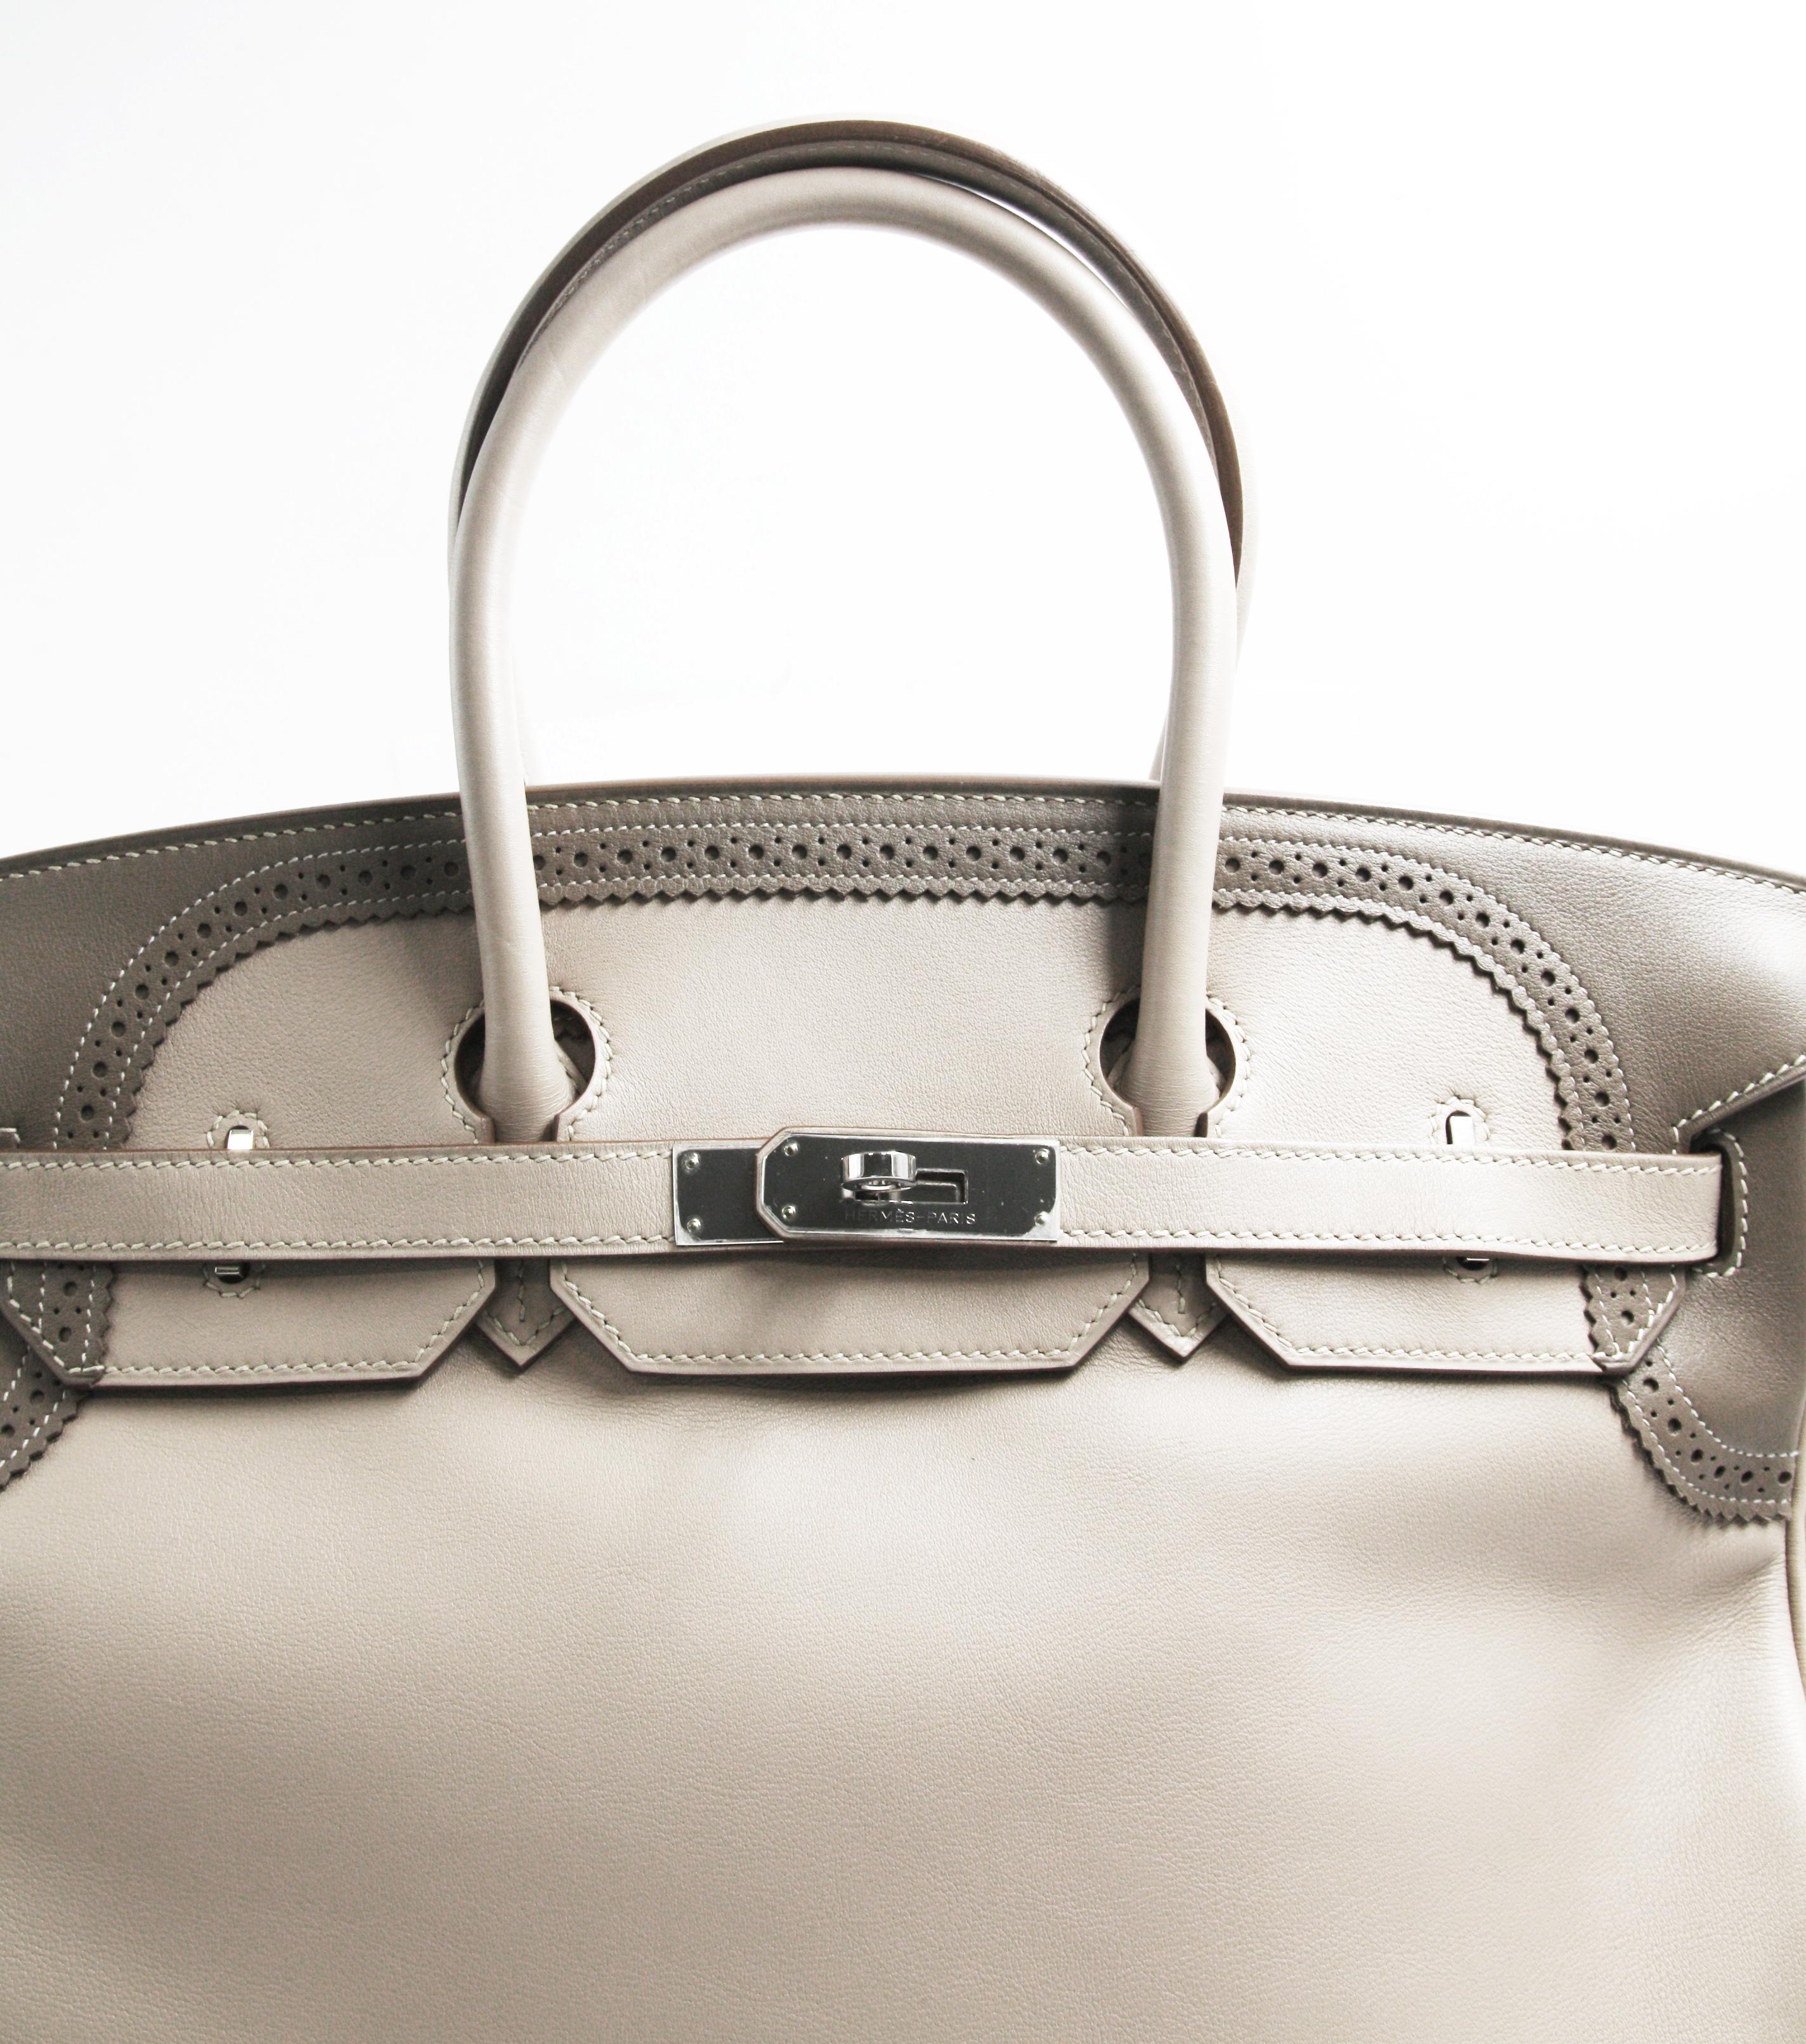 Hermes Birkin 35 Gray Cowhide Handbag 
Size 13.78in * 7.1in *9.8in
Cowhide Leather
Paper Box

